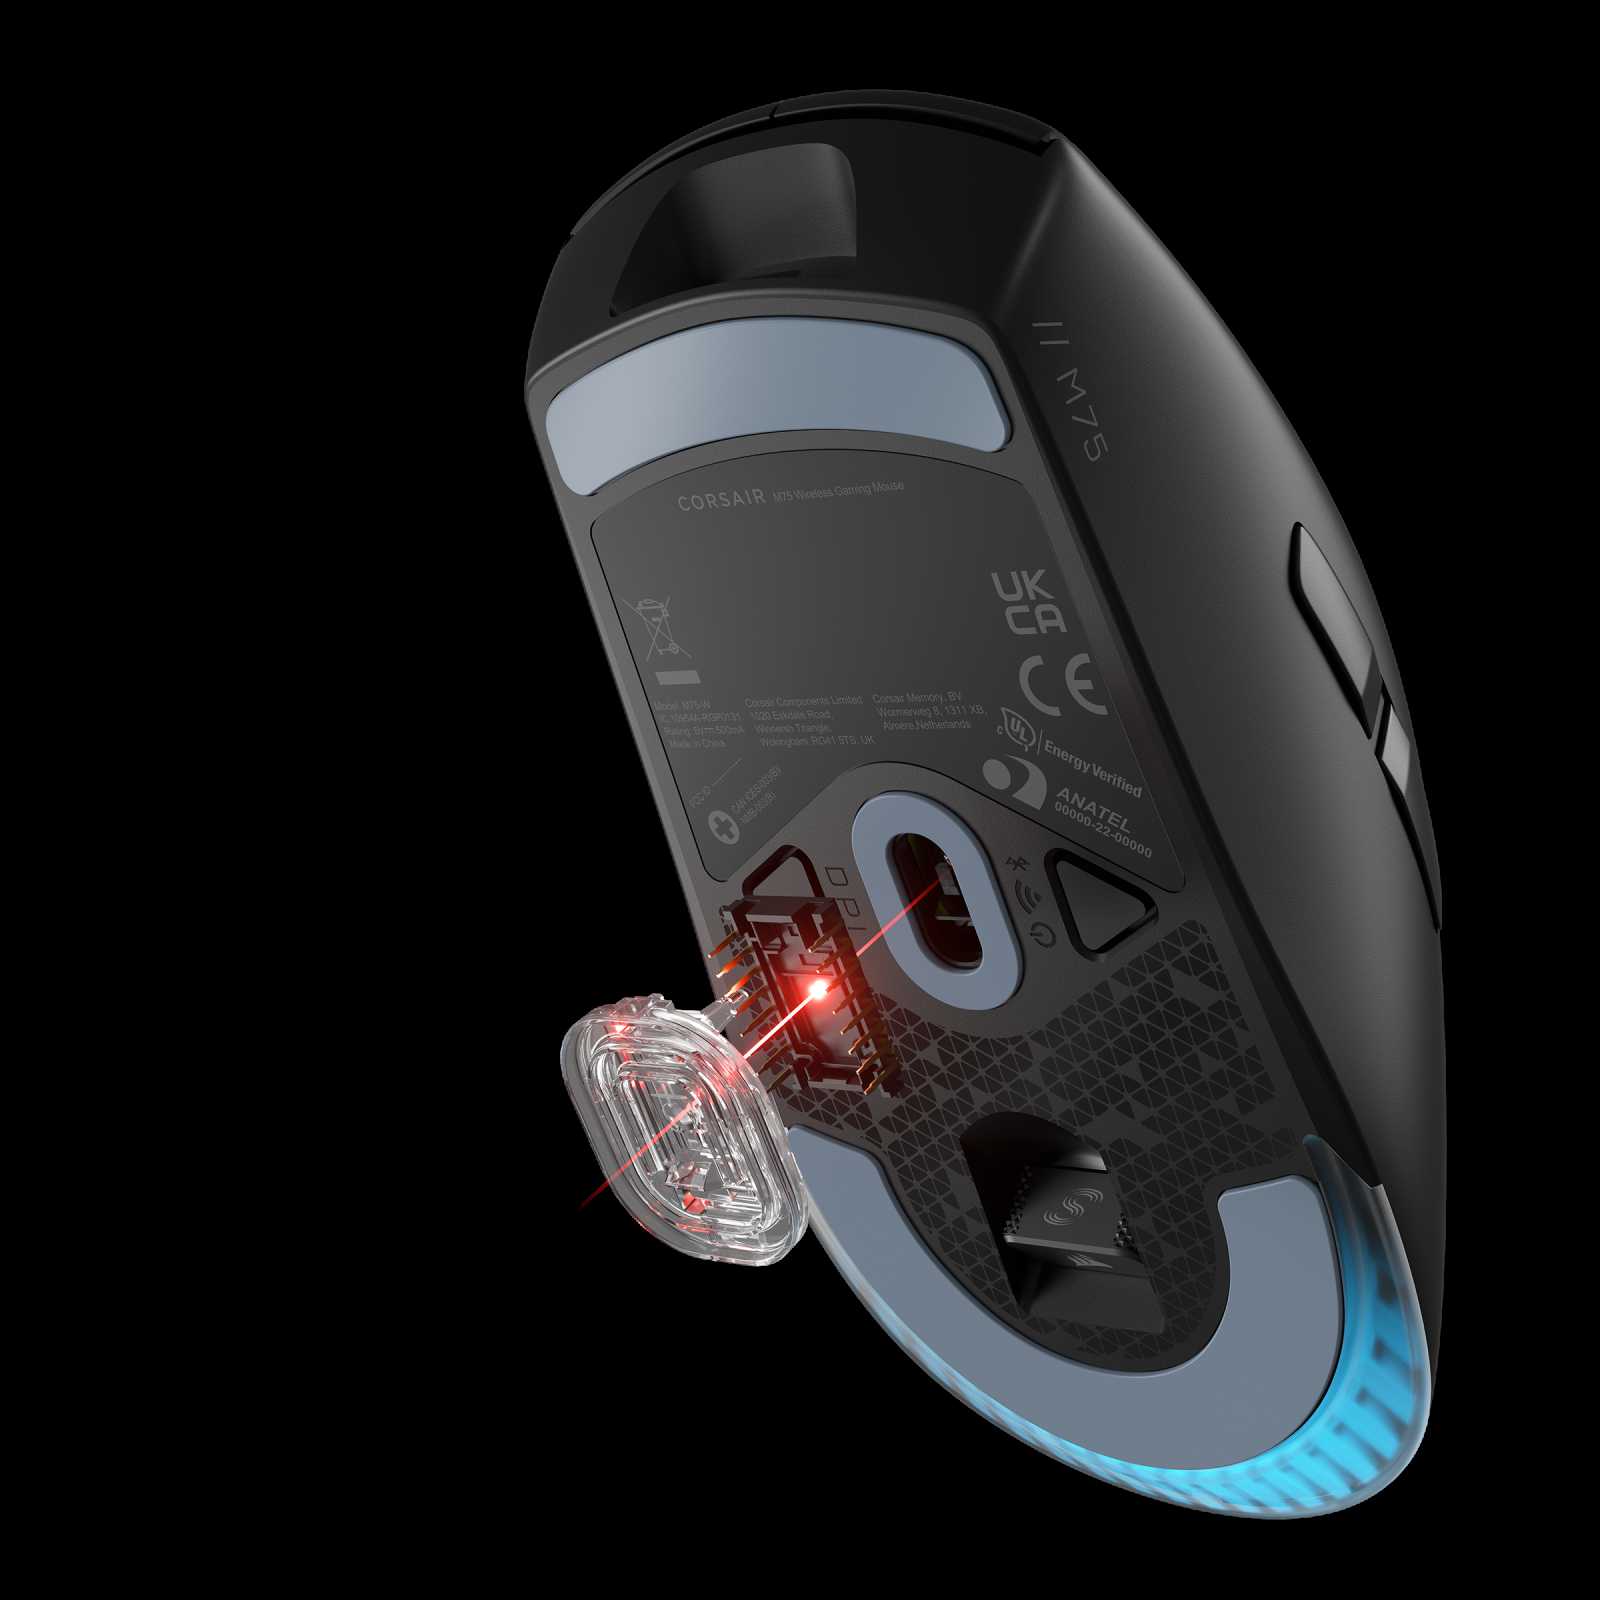 Recenze myší Corsair M75 a M75 Wireless pro prváky, leváky a hlavně hráče